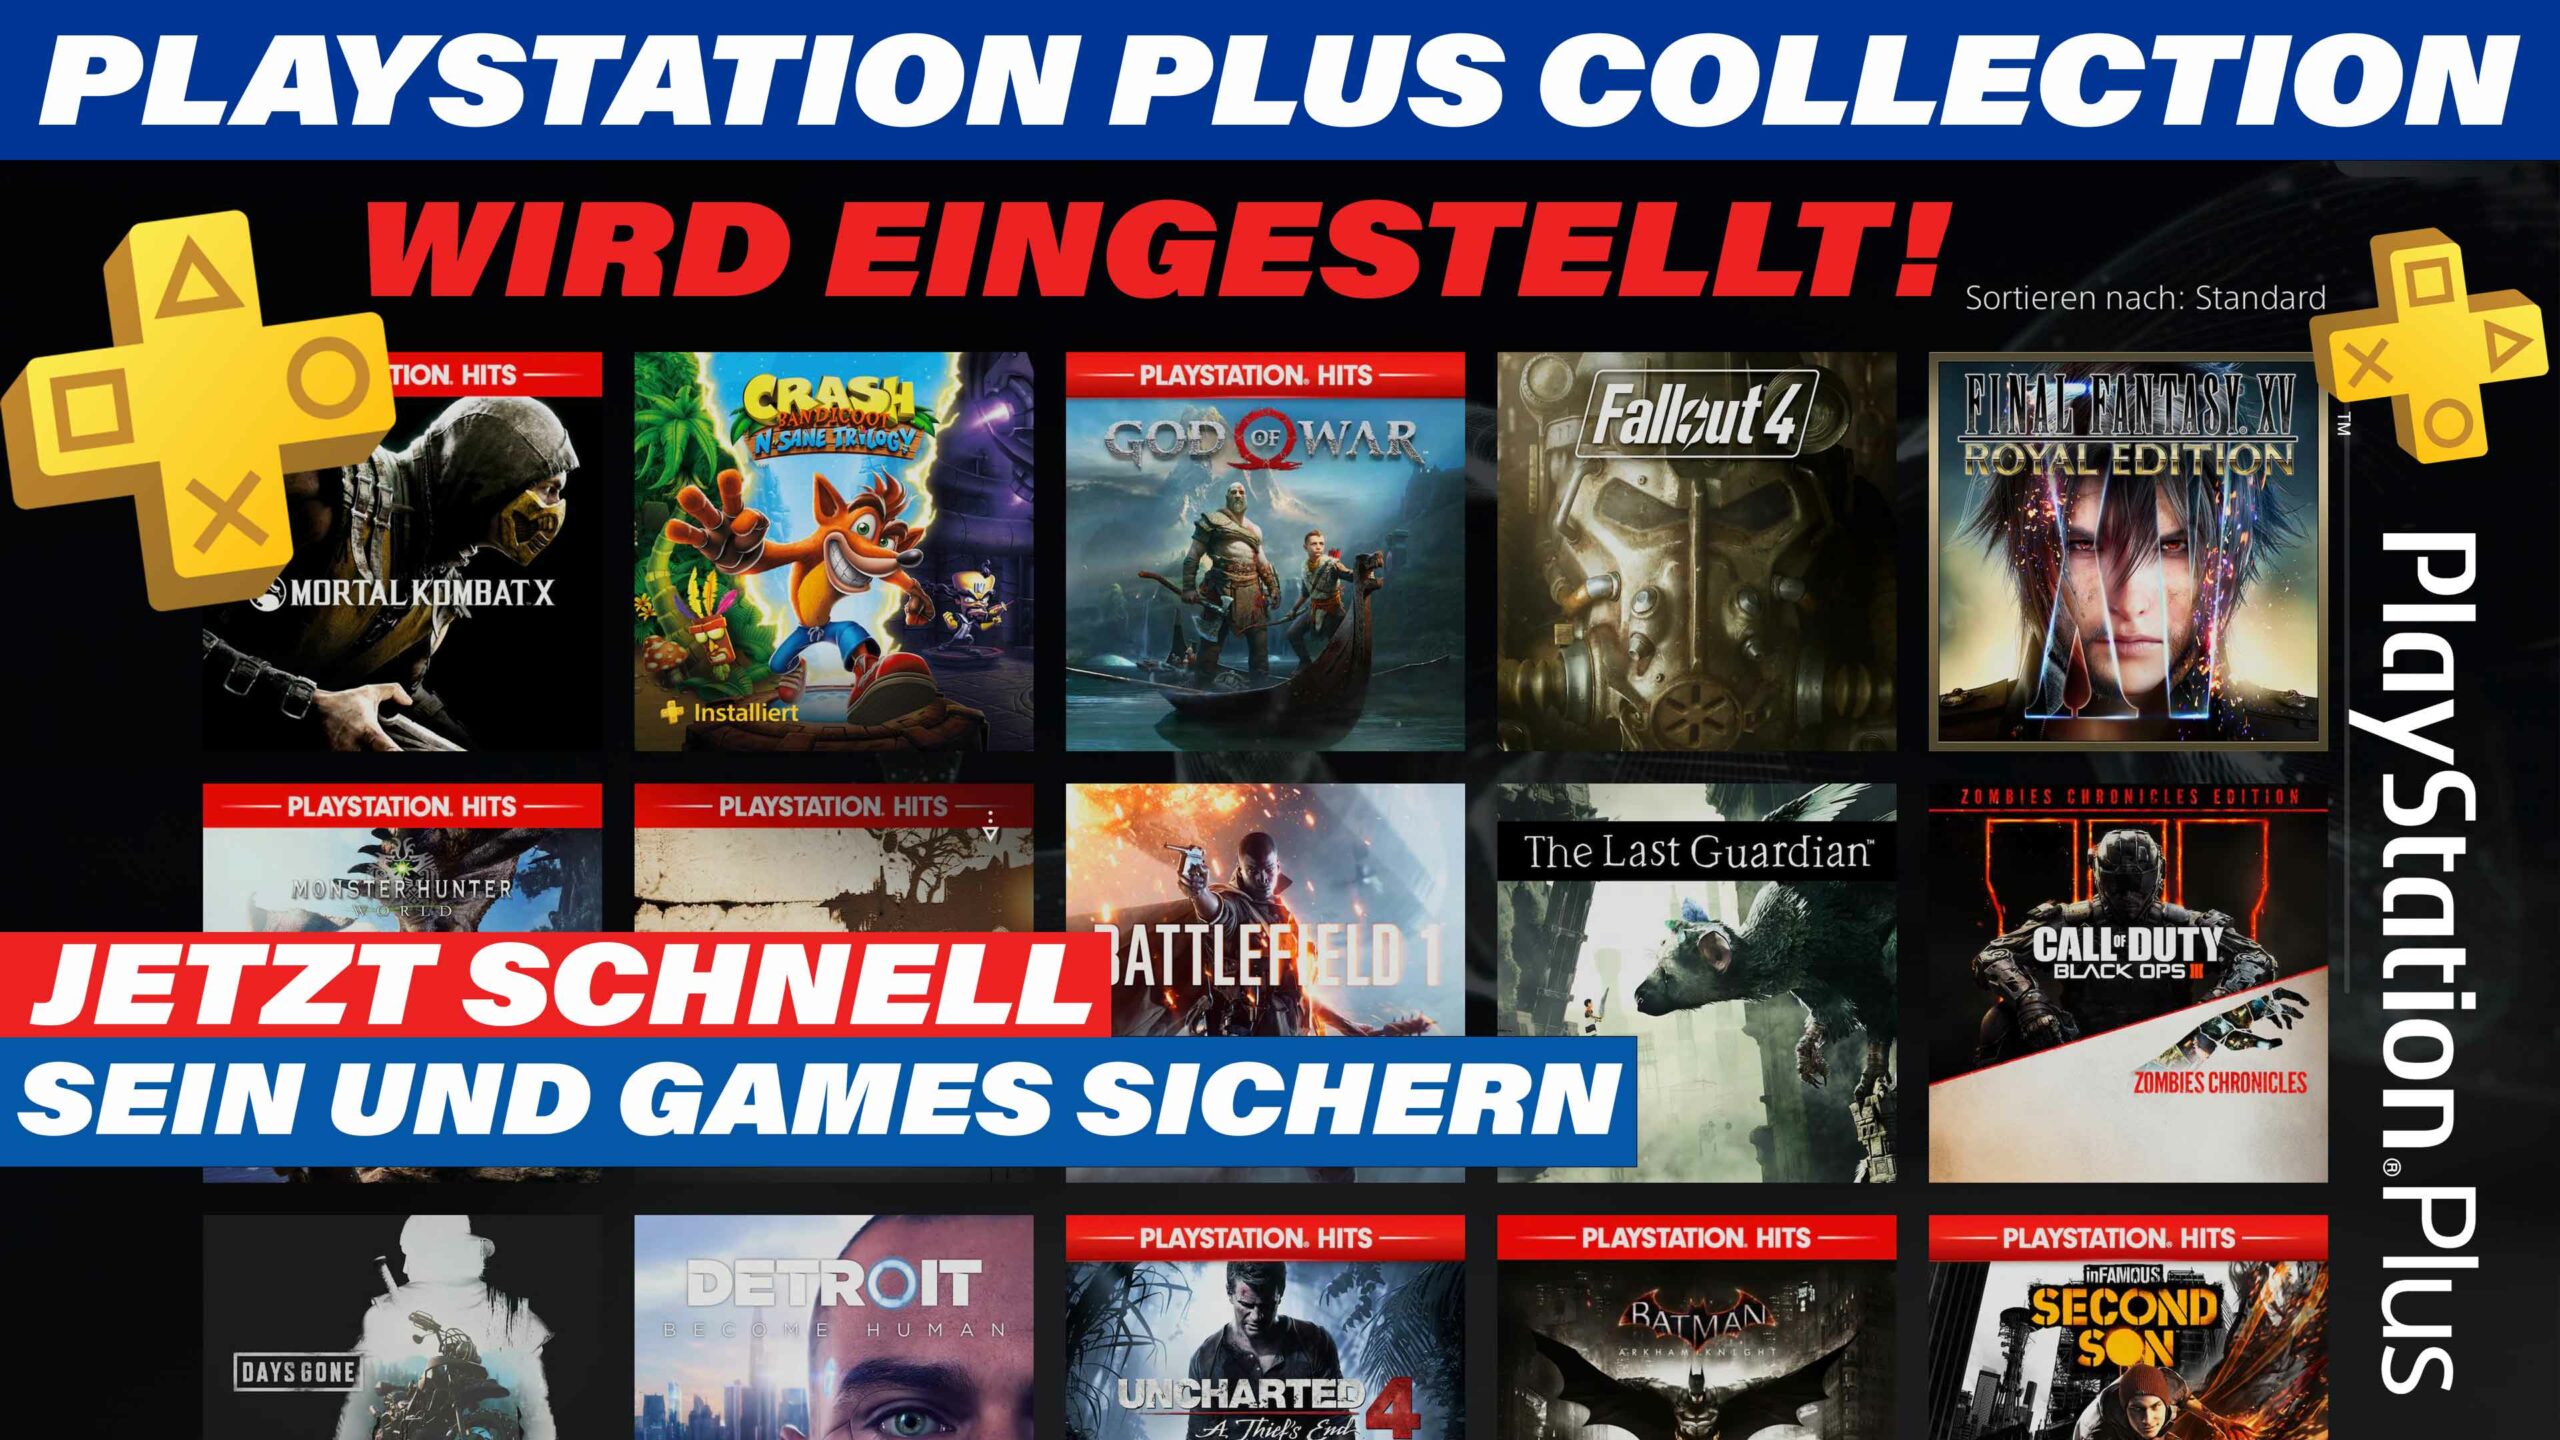 PlayStation Plus Collection wird zum 9. Mai eingestellt | Jetzt schnell PS4 Games sichern!